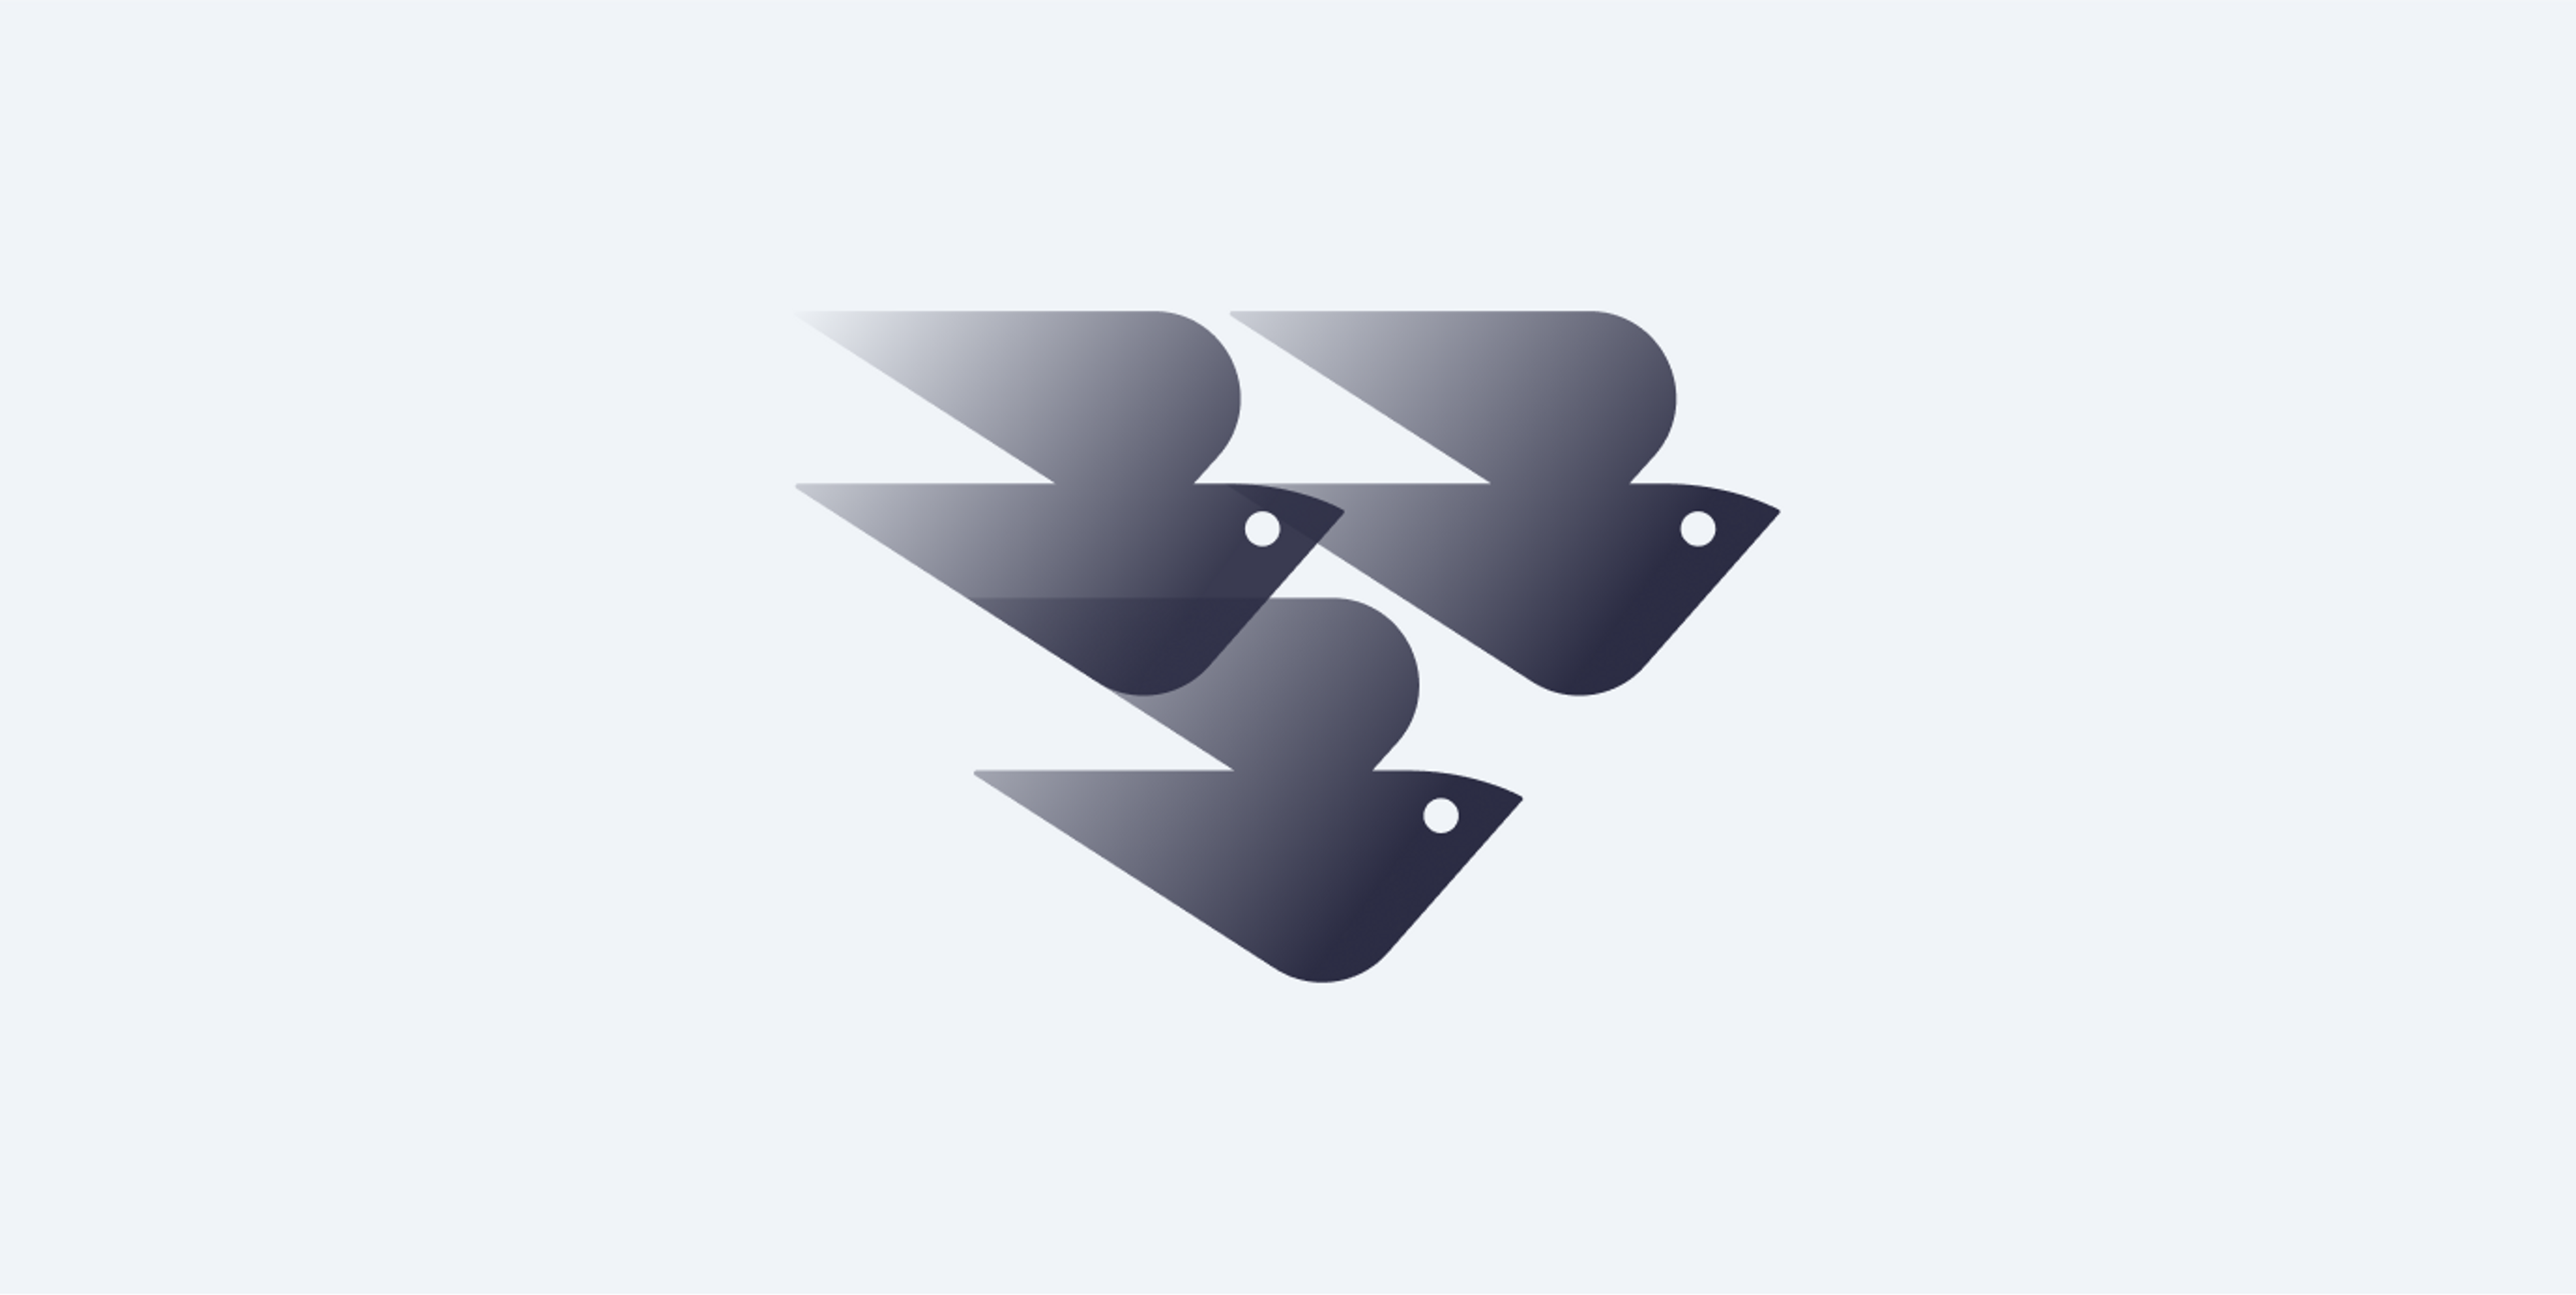 Логотип Sora Union складається з трьох абстрактних форм птахів, які перекривають один одного